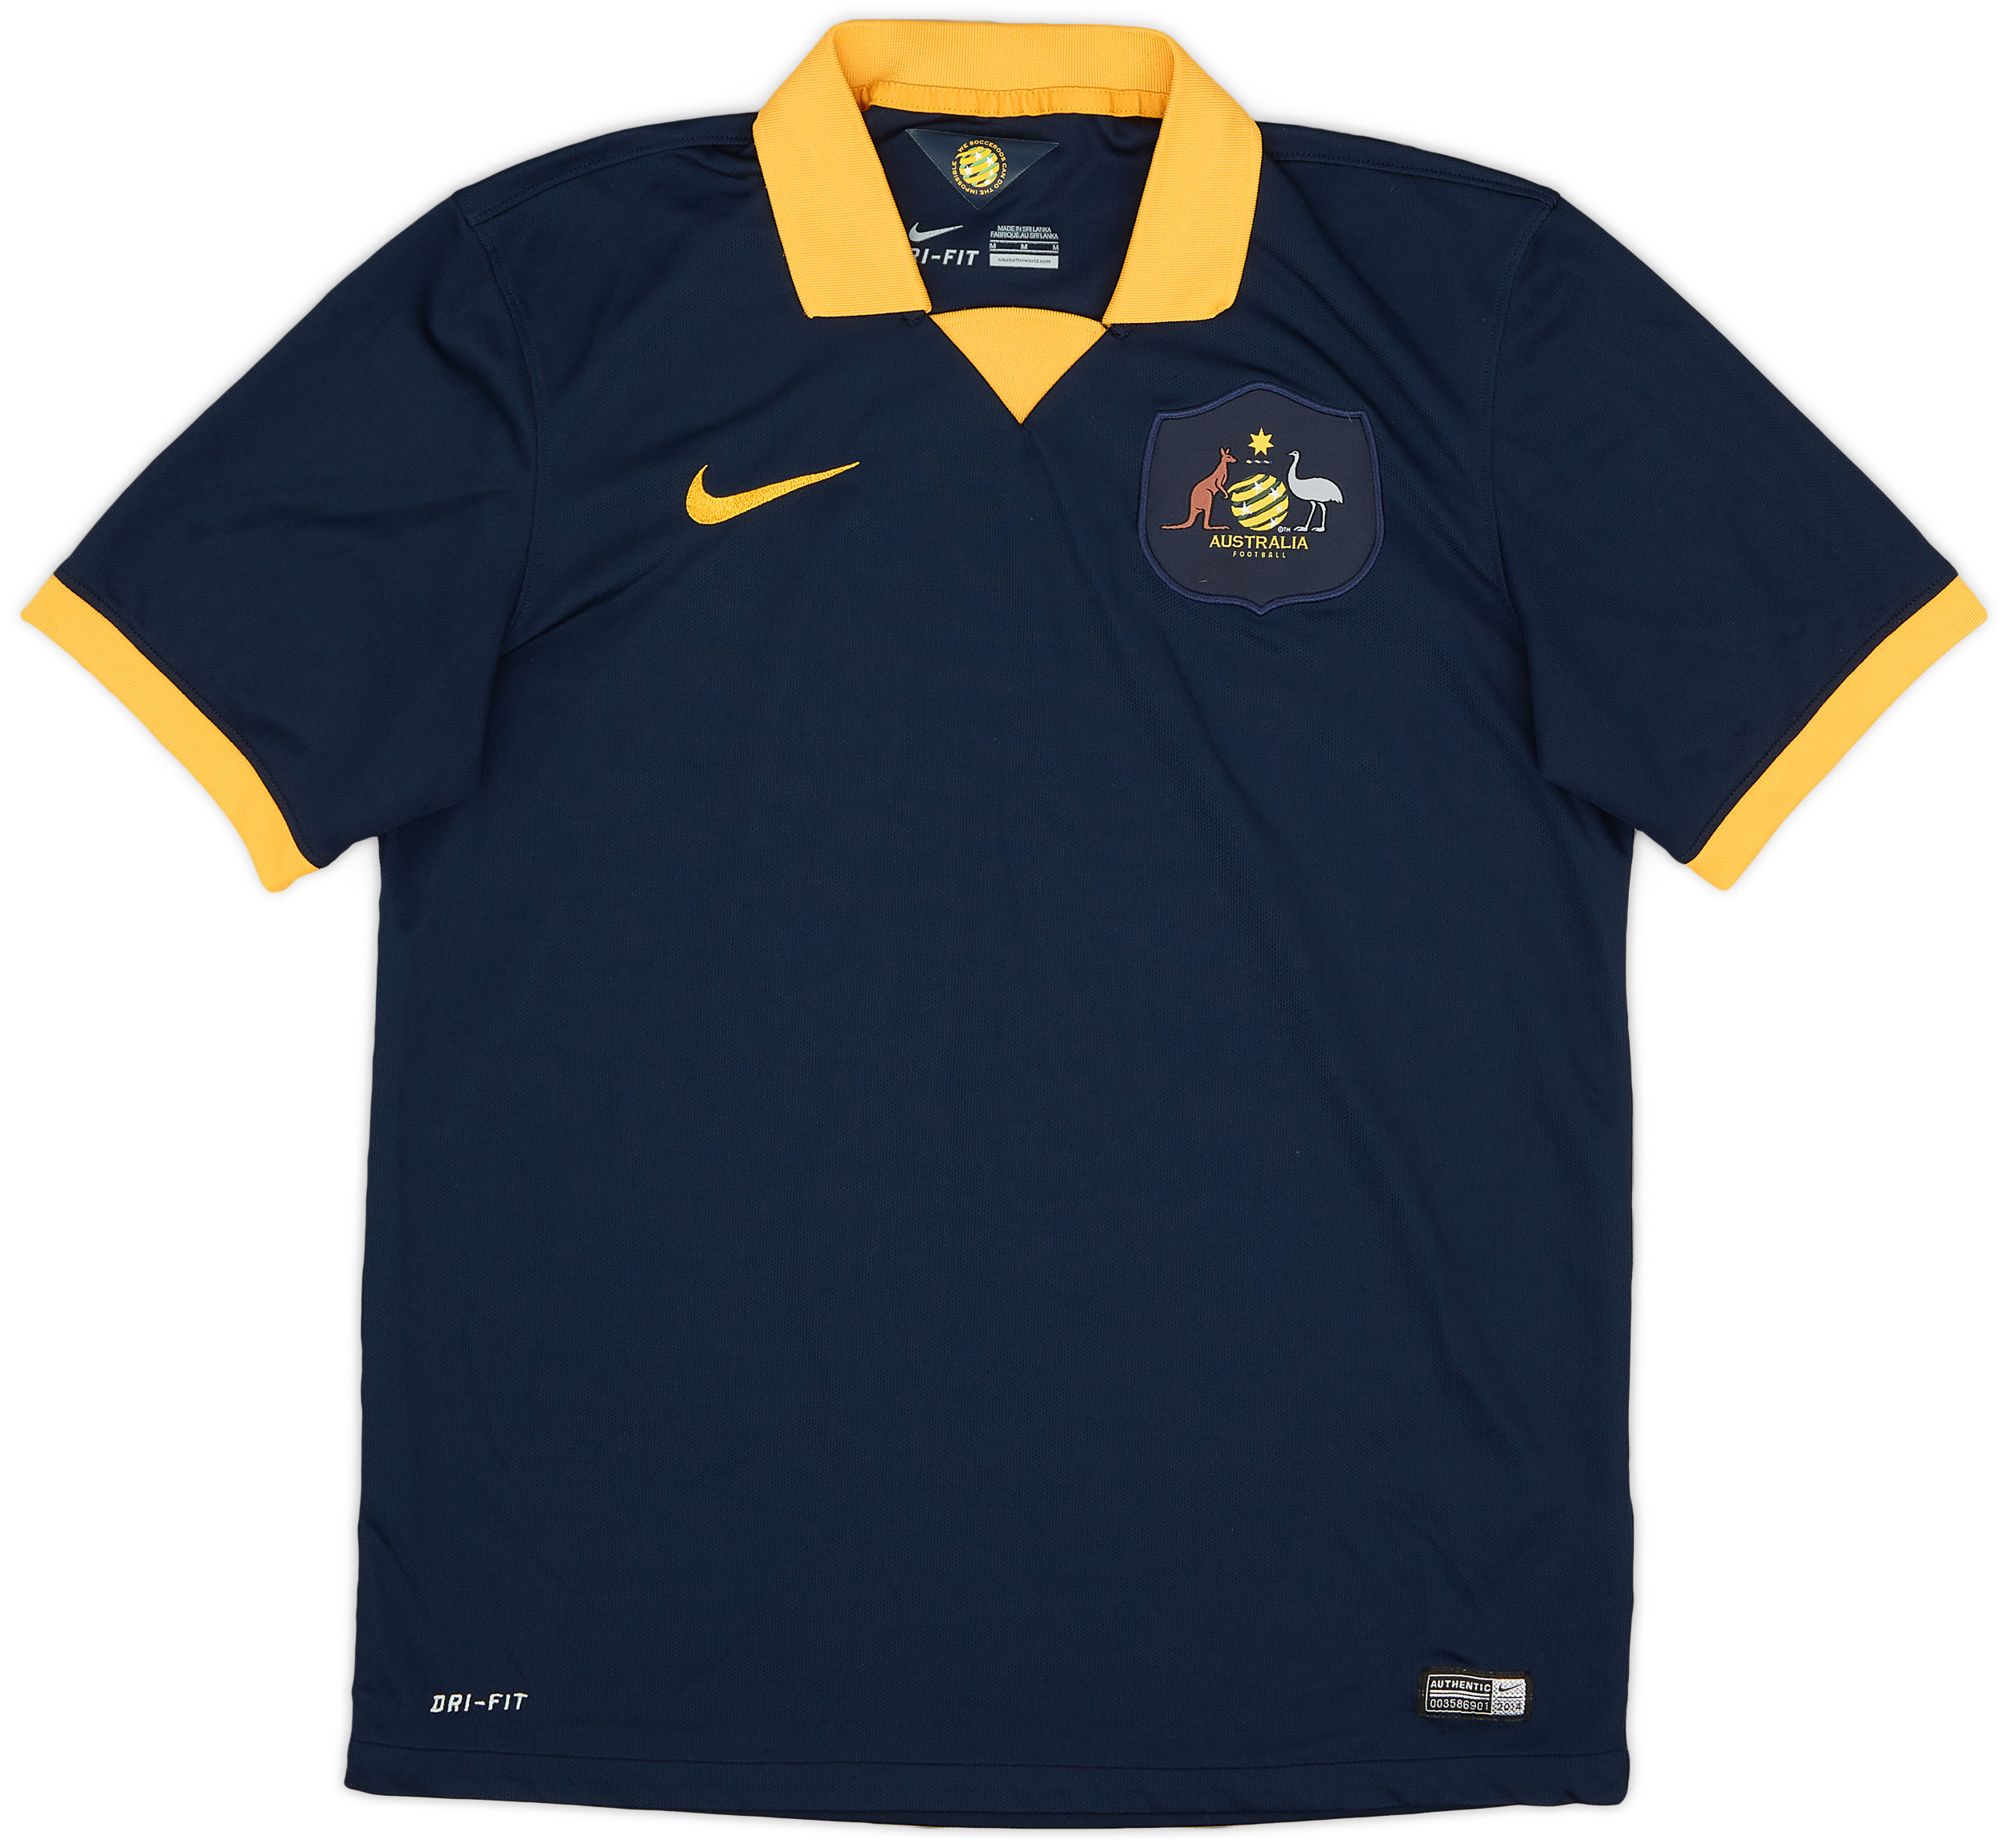 Retro Australia Shirt